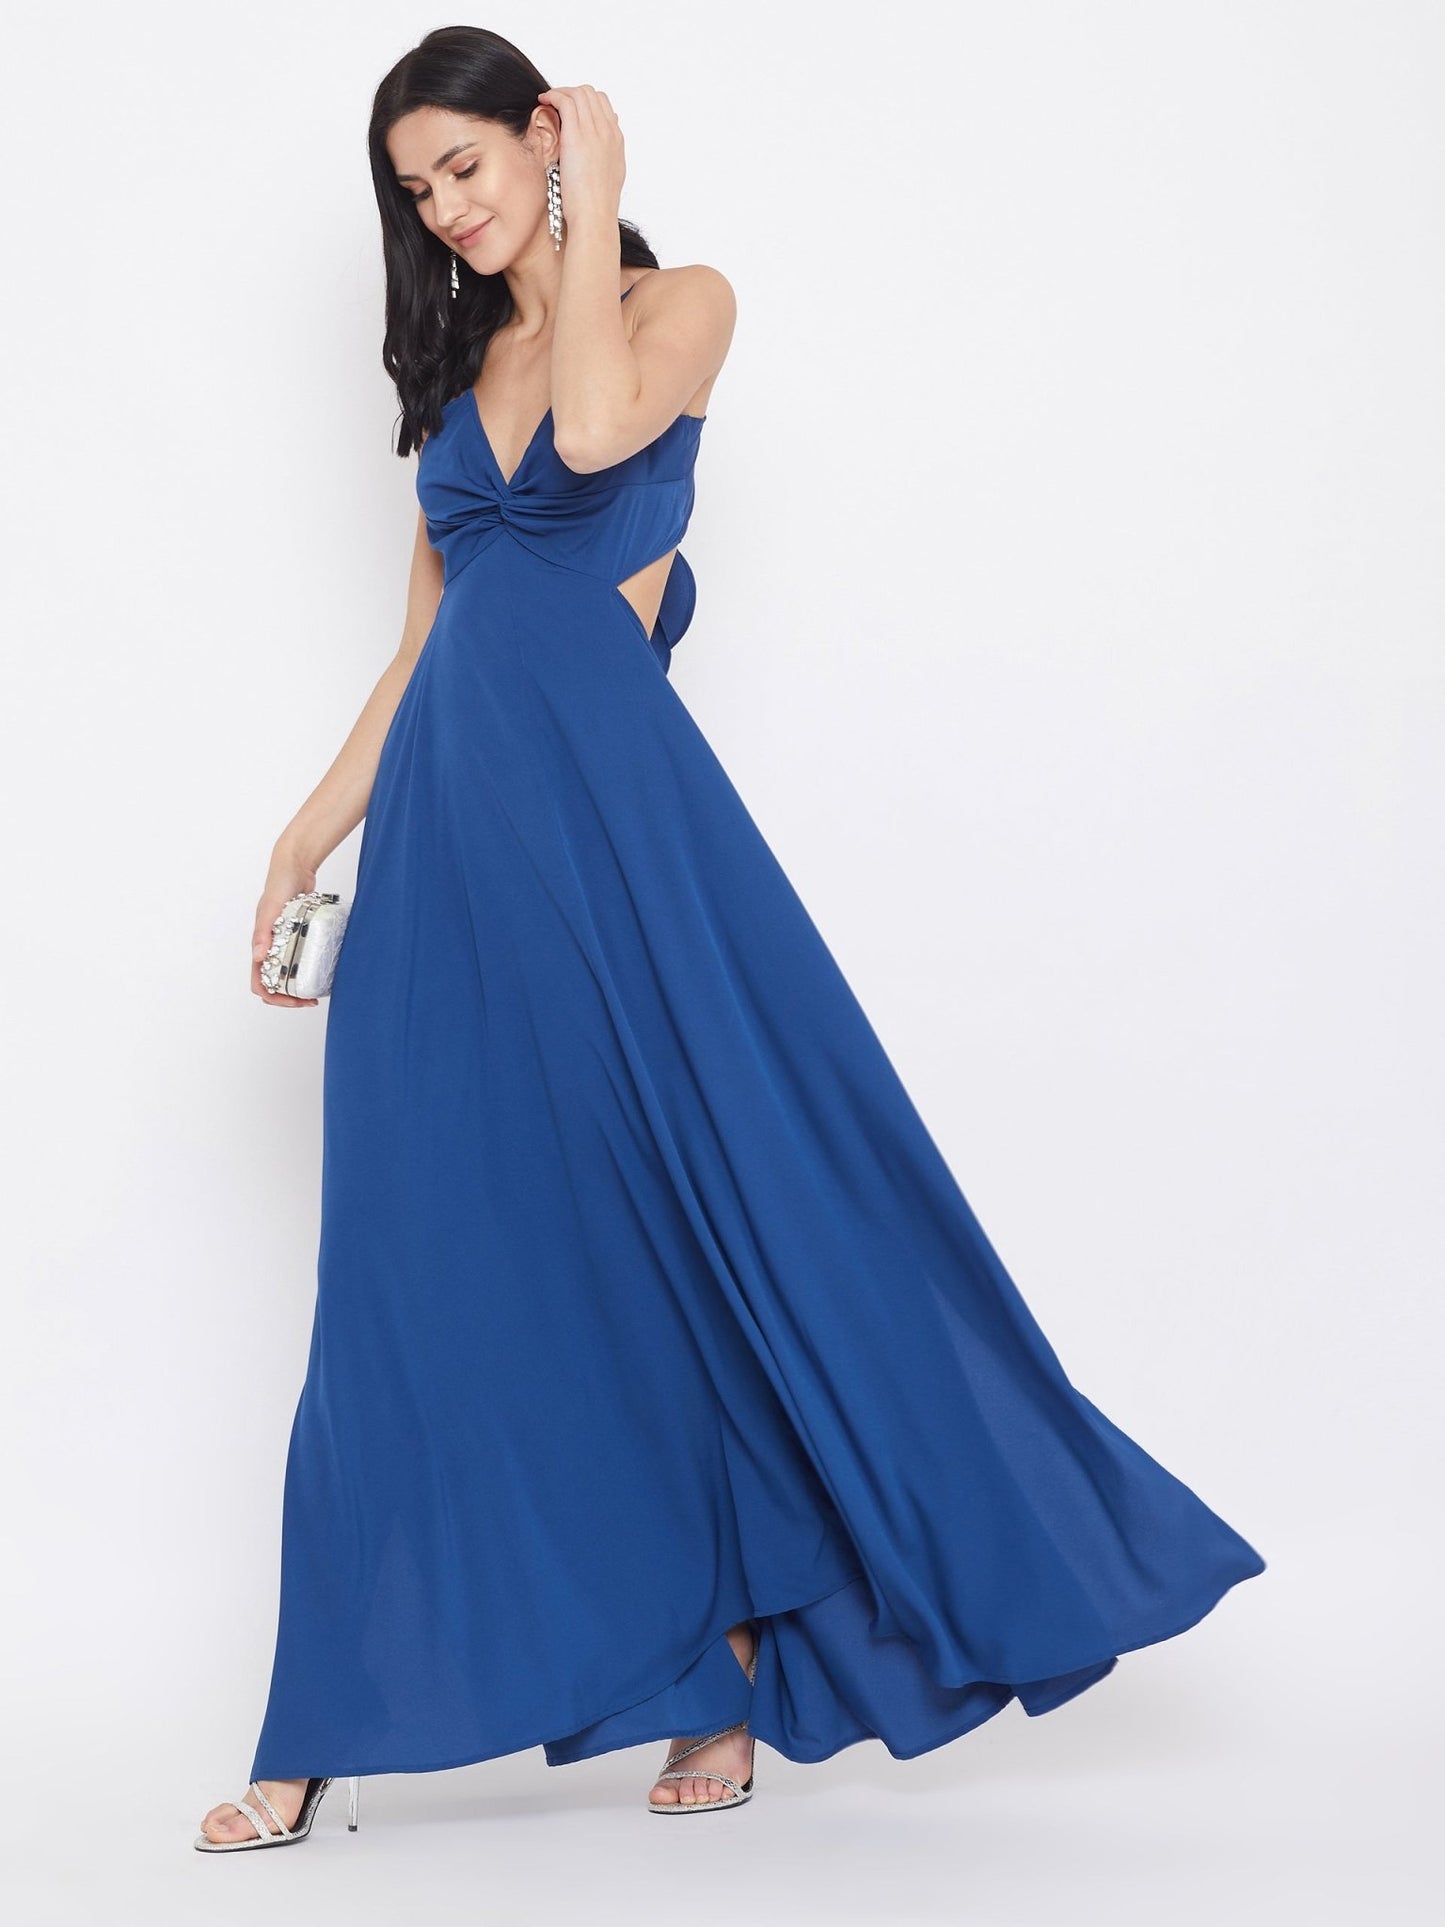 Folk Republic Women Solid Blue Strappy V-Neck A-Line Maxi Dress - #folk republic#